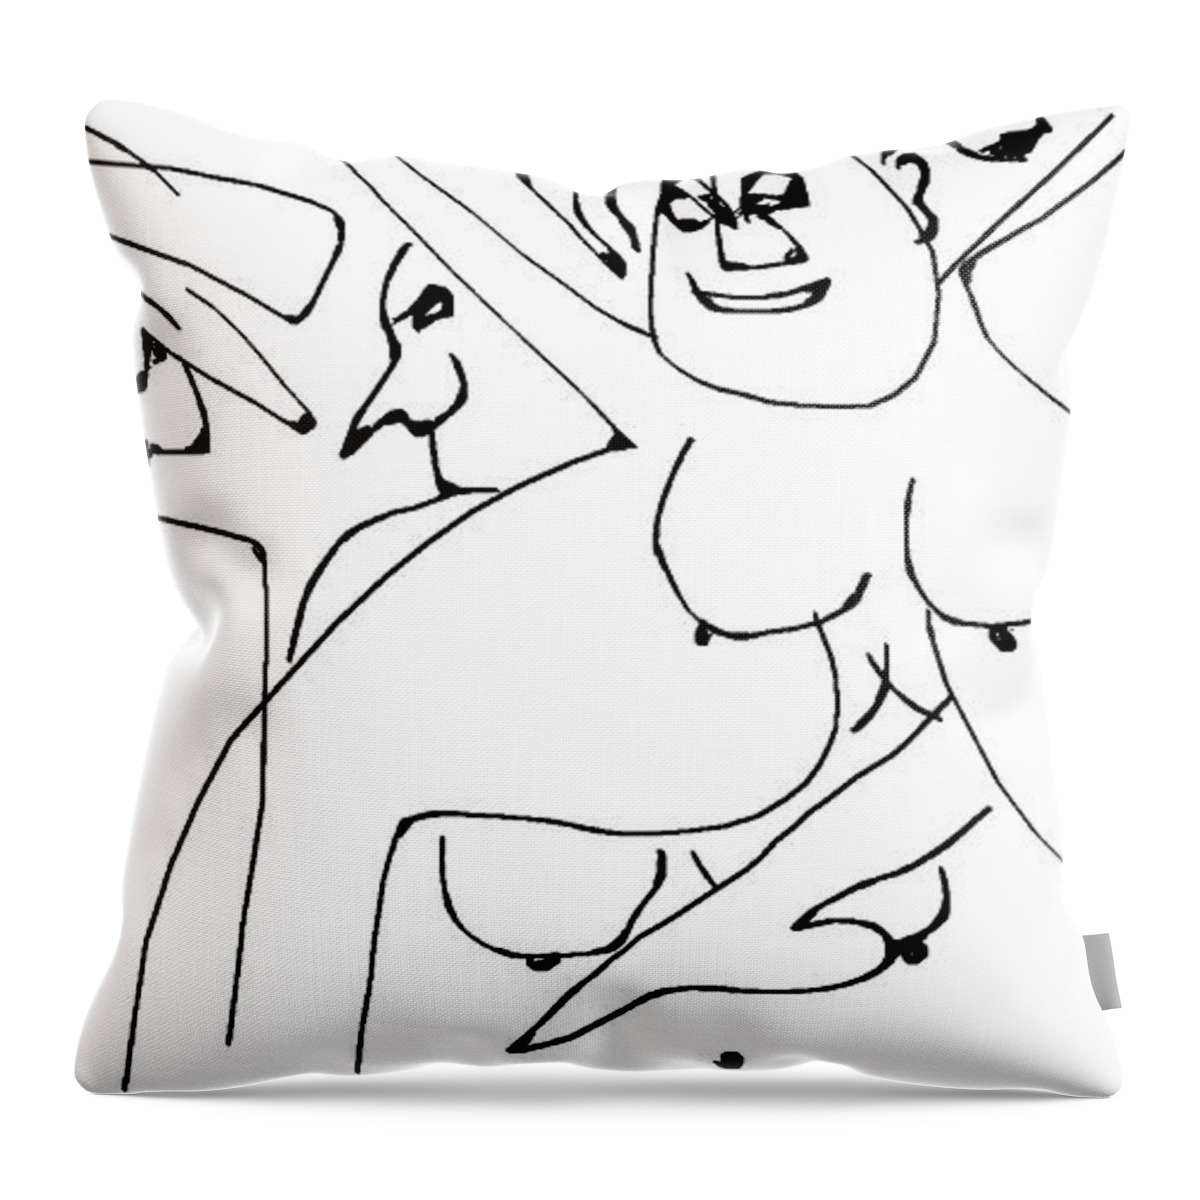  Throw Pillow featuring the digital art Erotik Zirkus by Doug Duffey